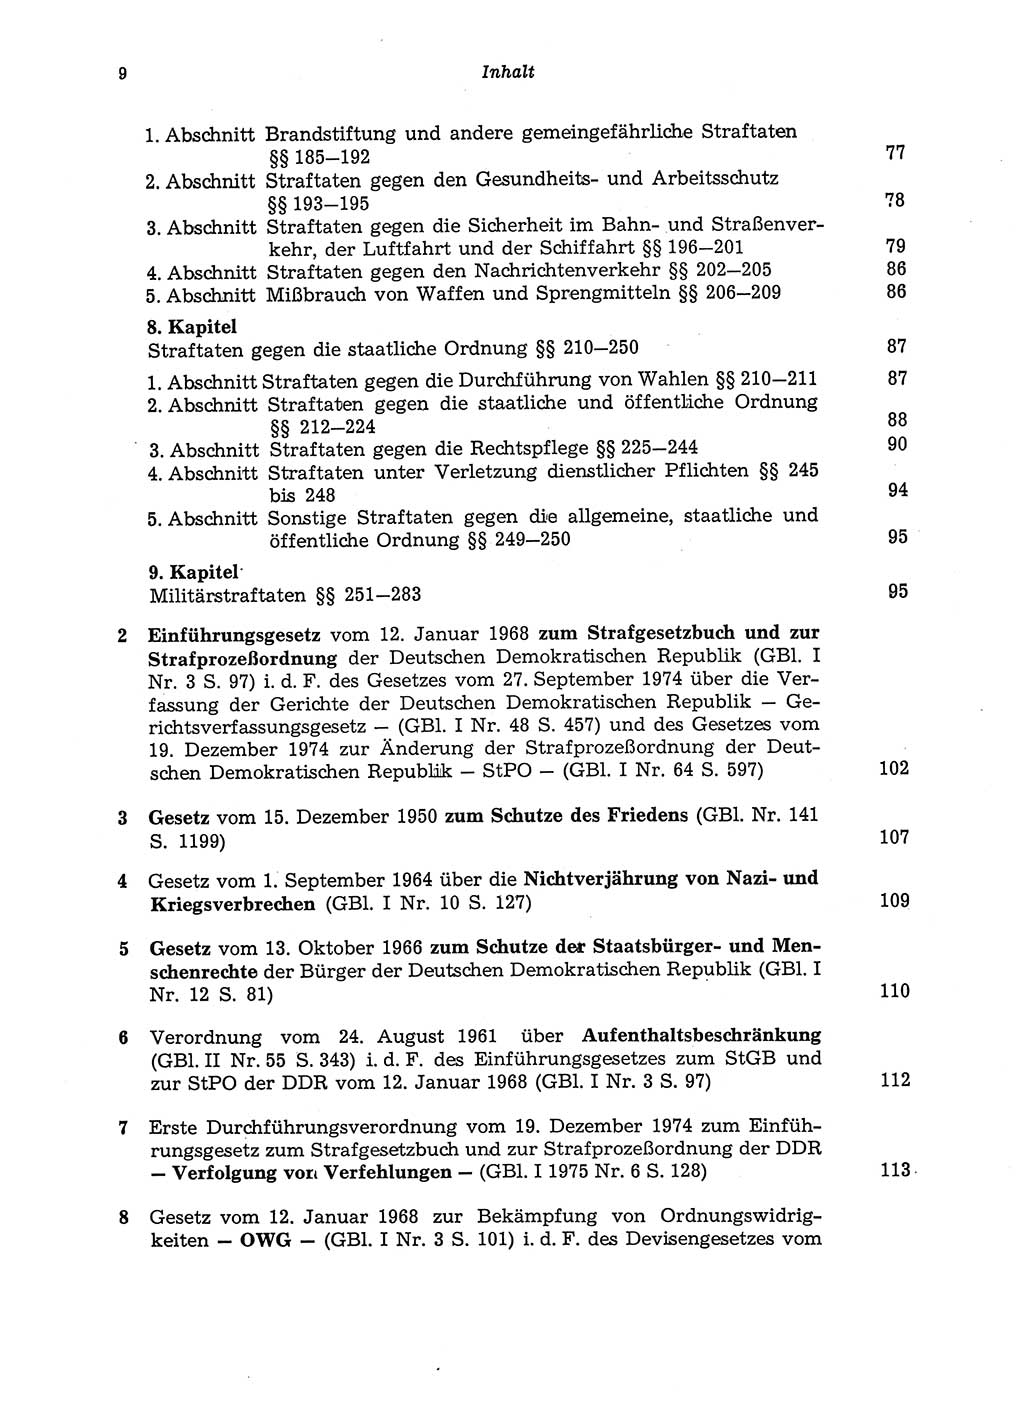 Strafgesetzbuch (StGB) der Deutschen Demokratischen Republik (DDR) und angrenzende Gesetze und Bestimmungen 1975, Seite 9 (StGB DDR Ges. Best. 1975, S. 9)